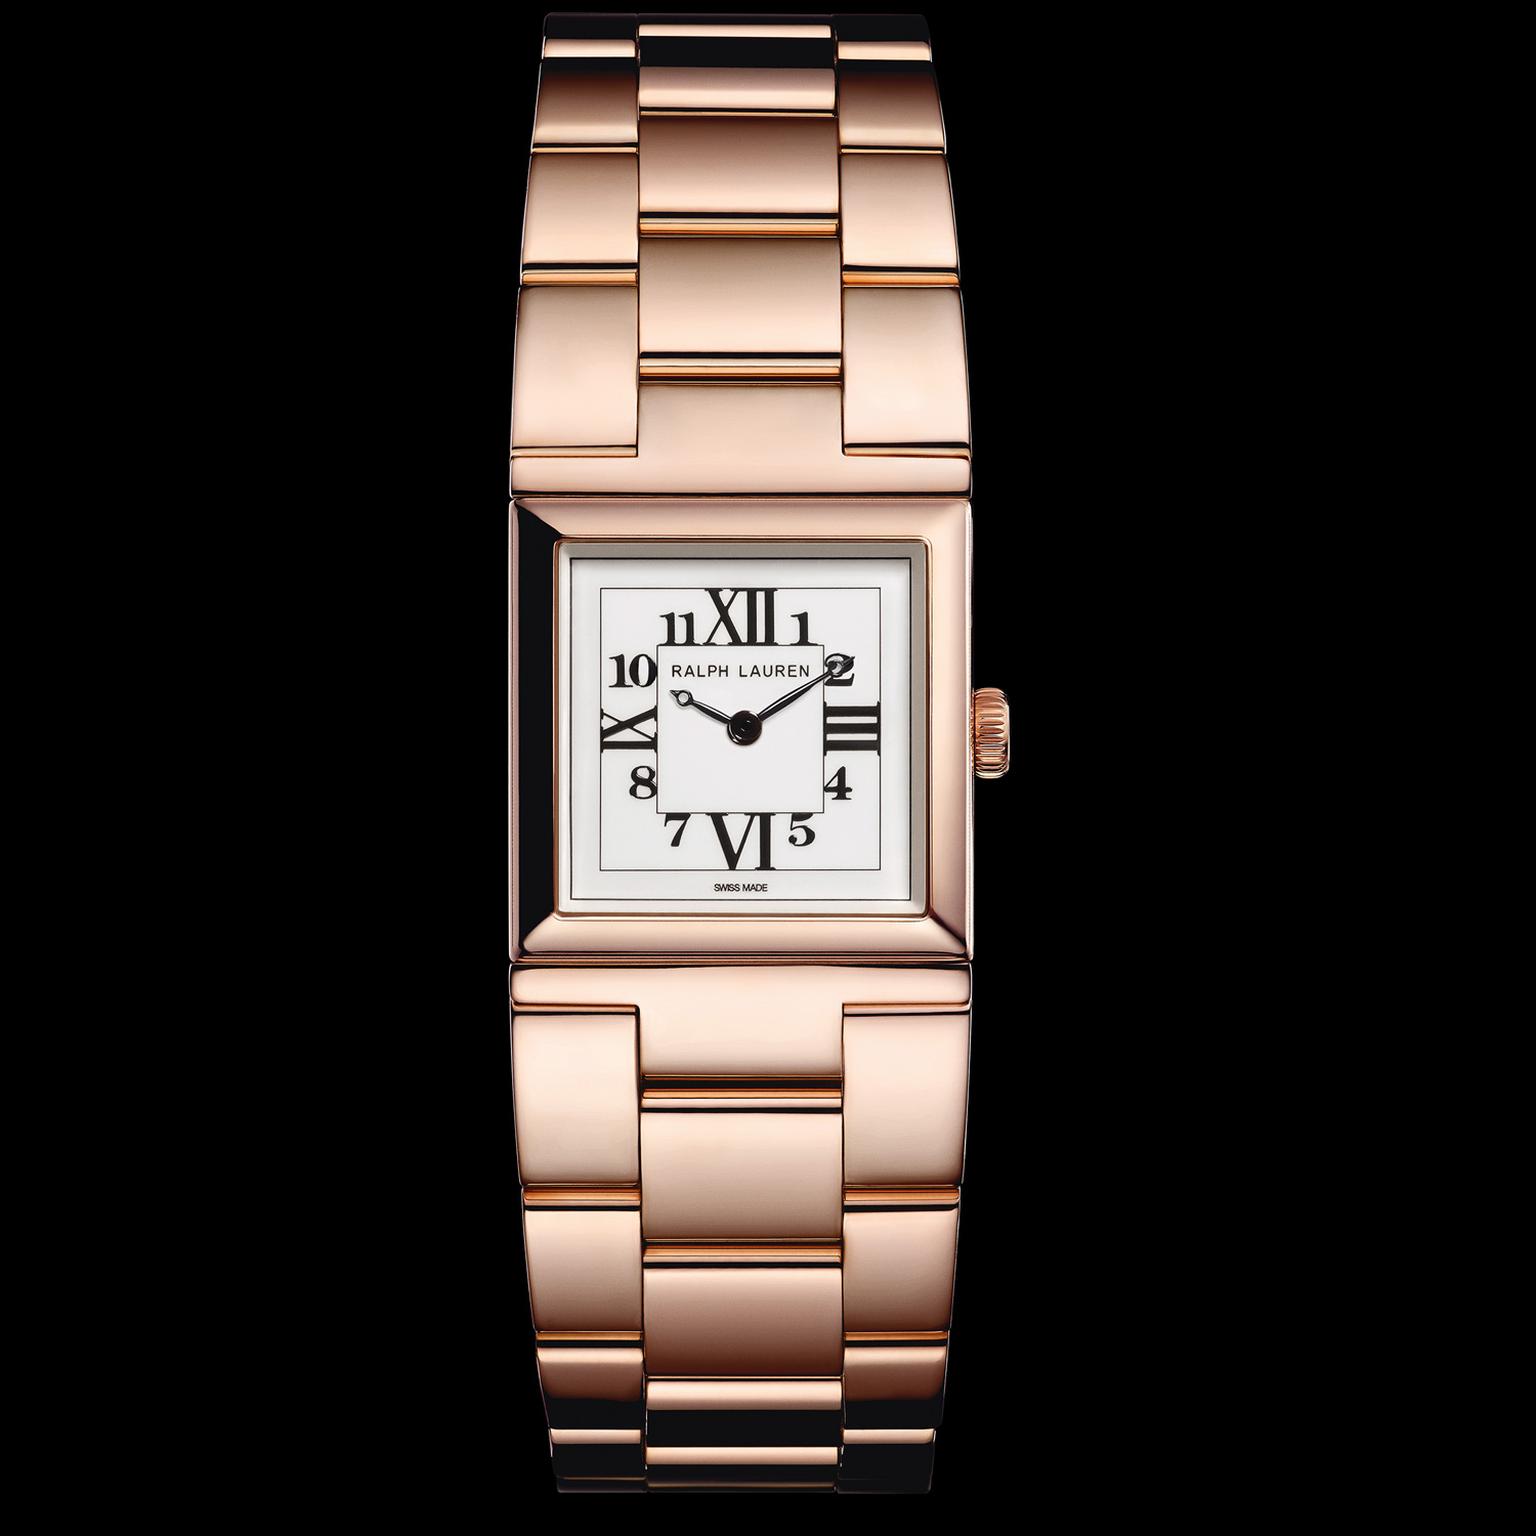 Ralph Lauren 867 petite rose gold watch